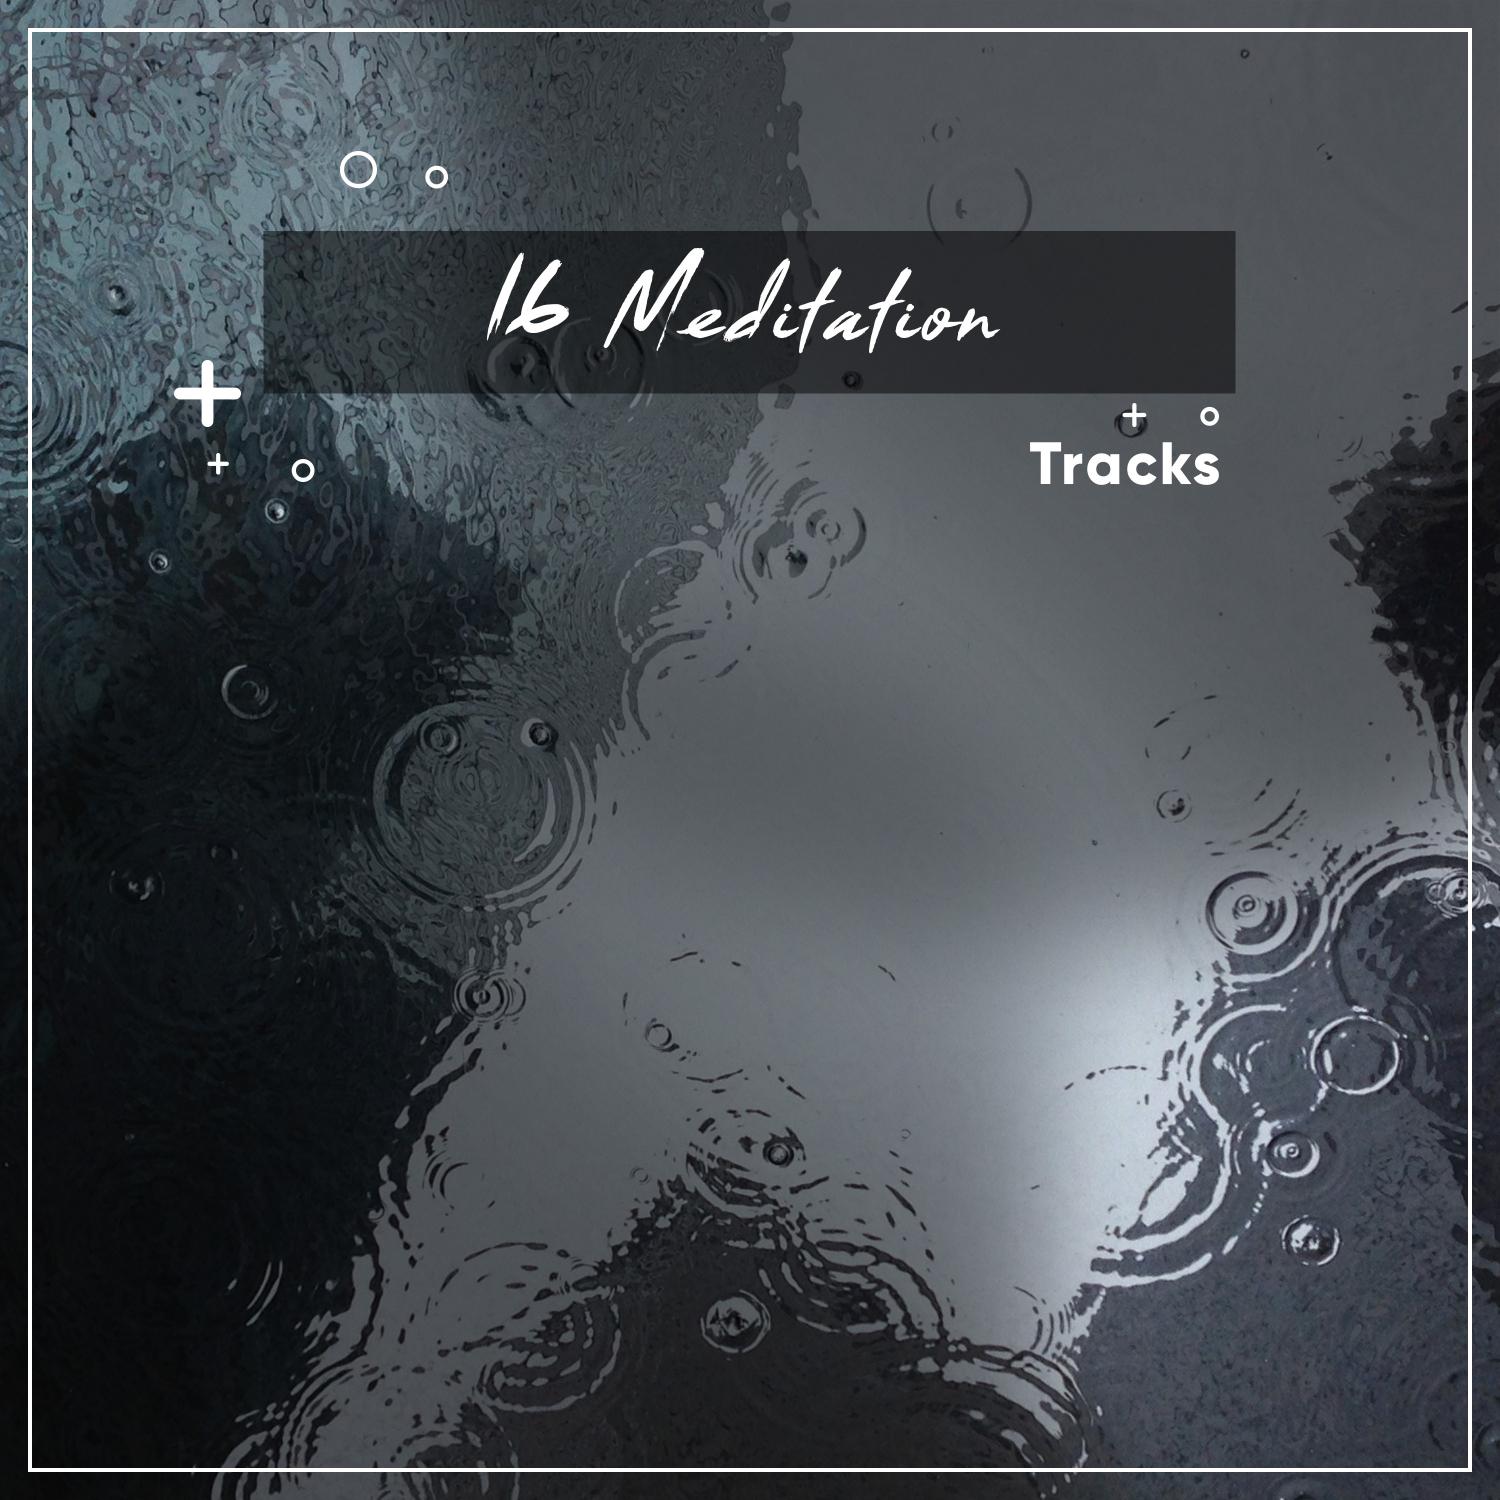 16 Meditation Tracks